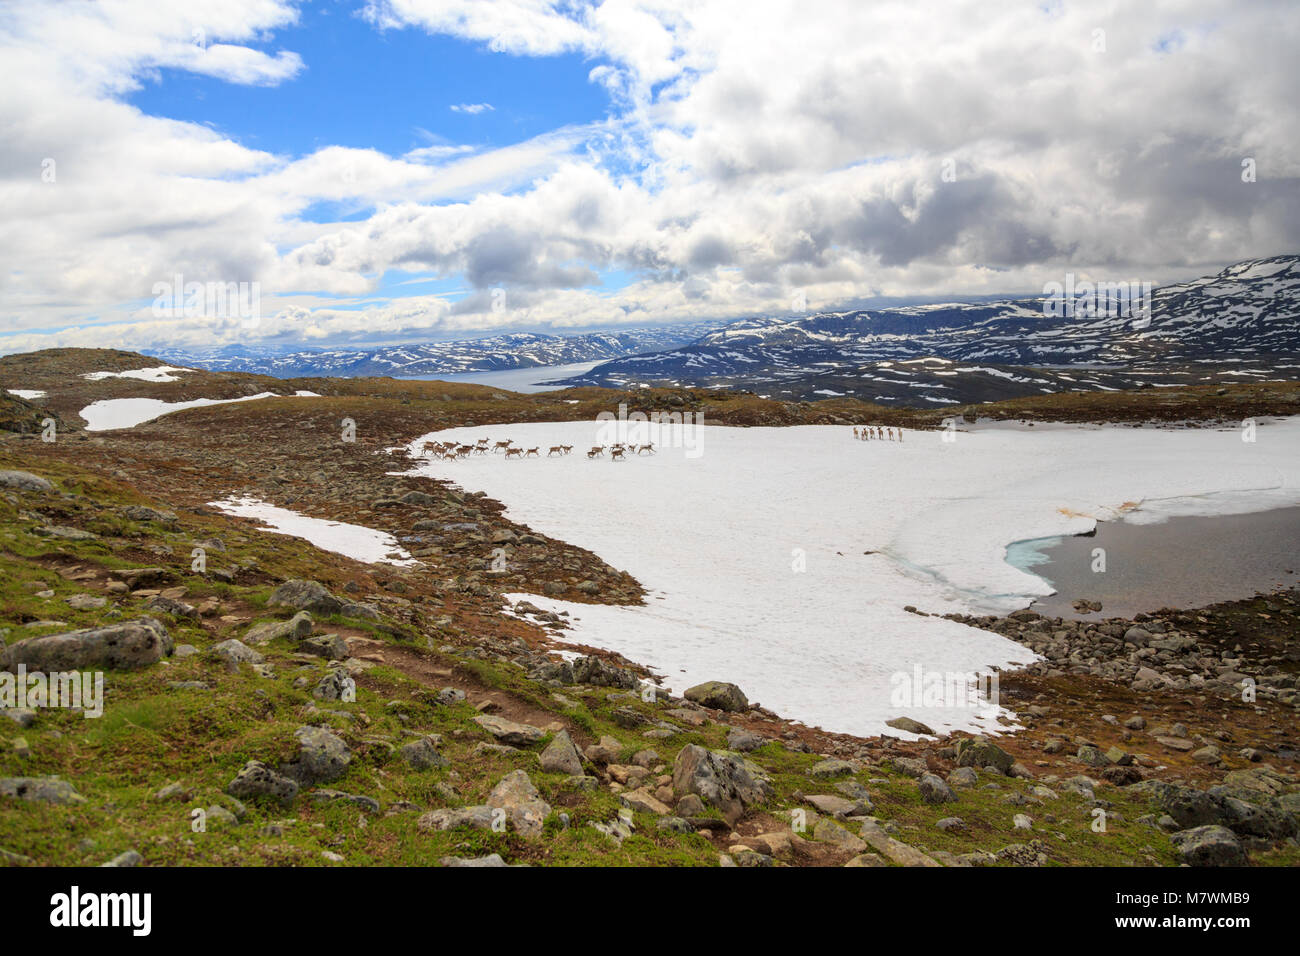 Un troupeau de rennes en travers d'une montagne en Norvège Jotunheimen Banque D'Images